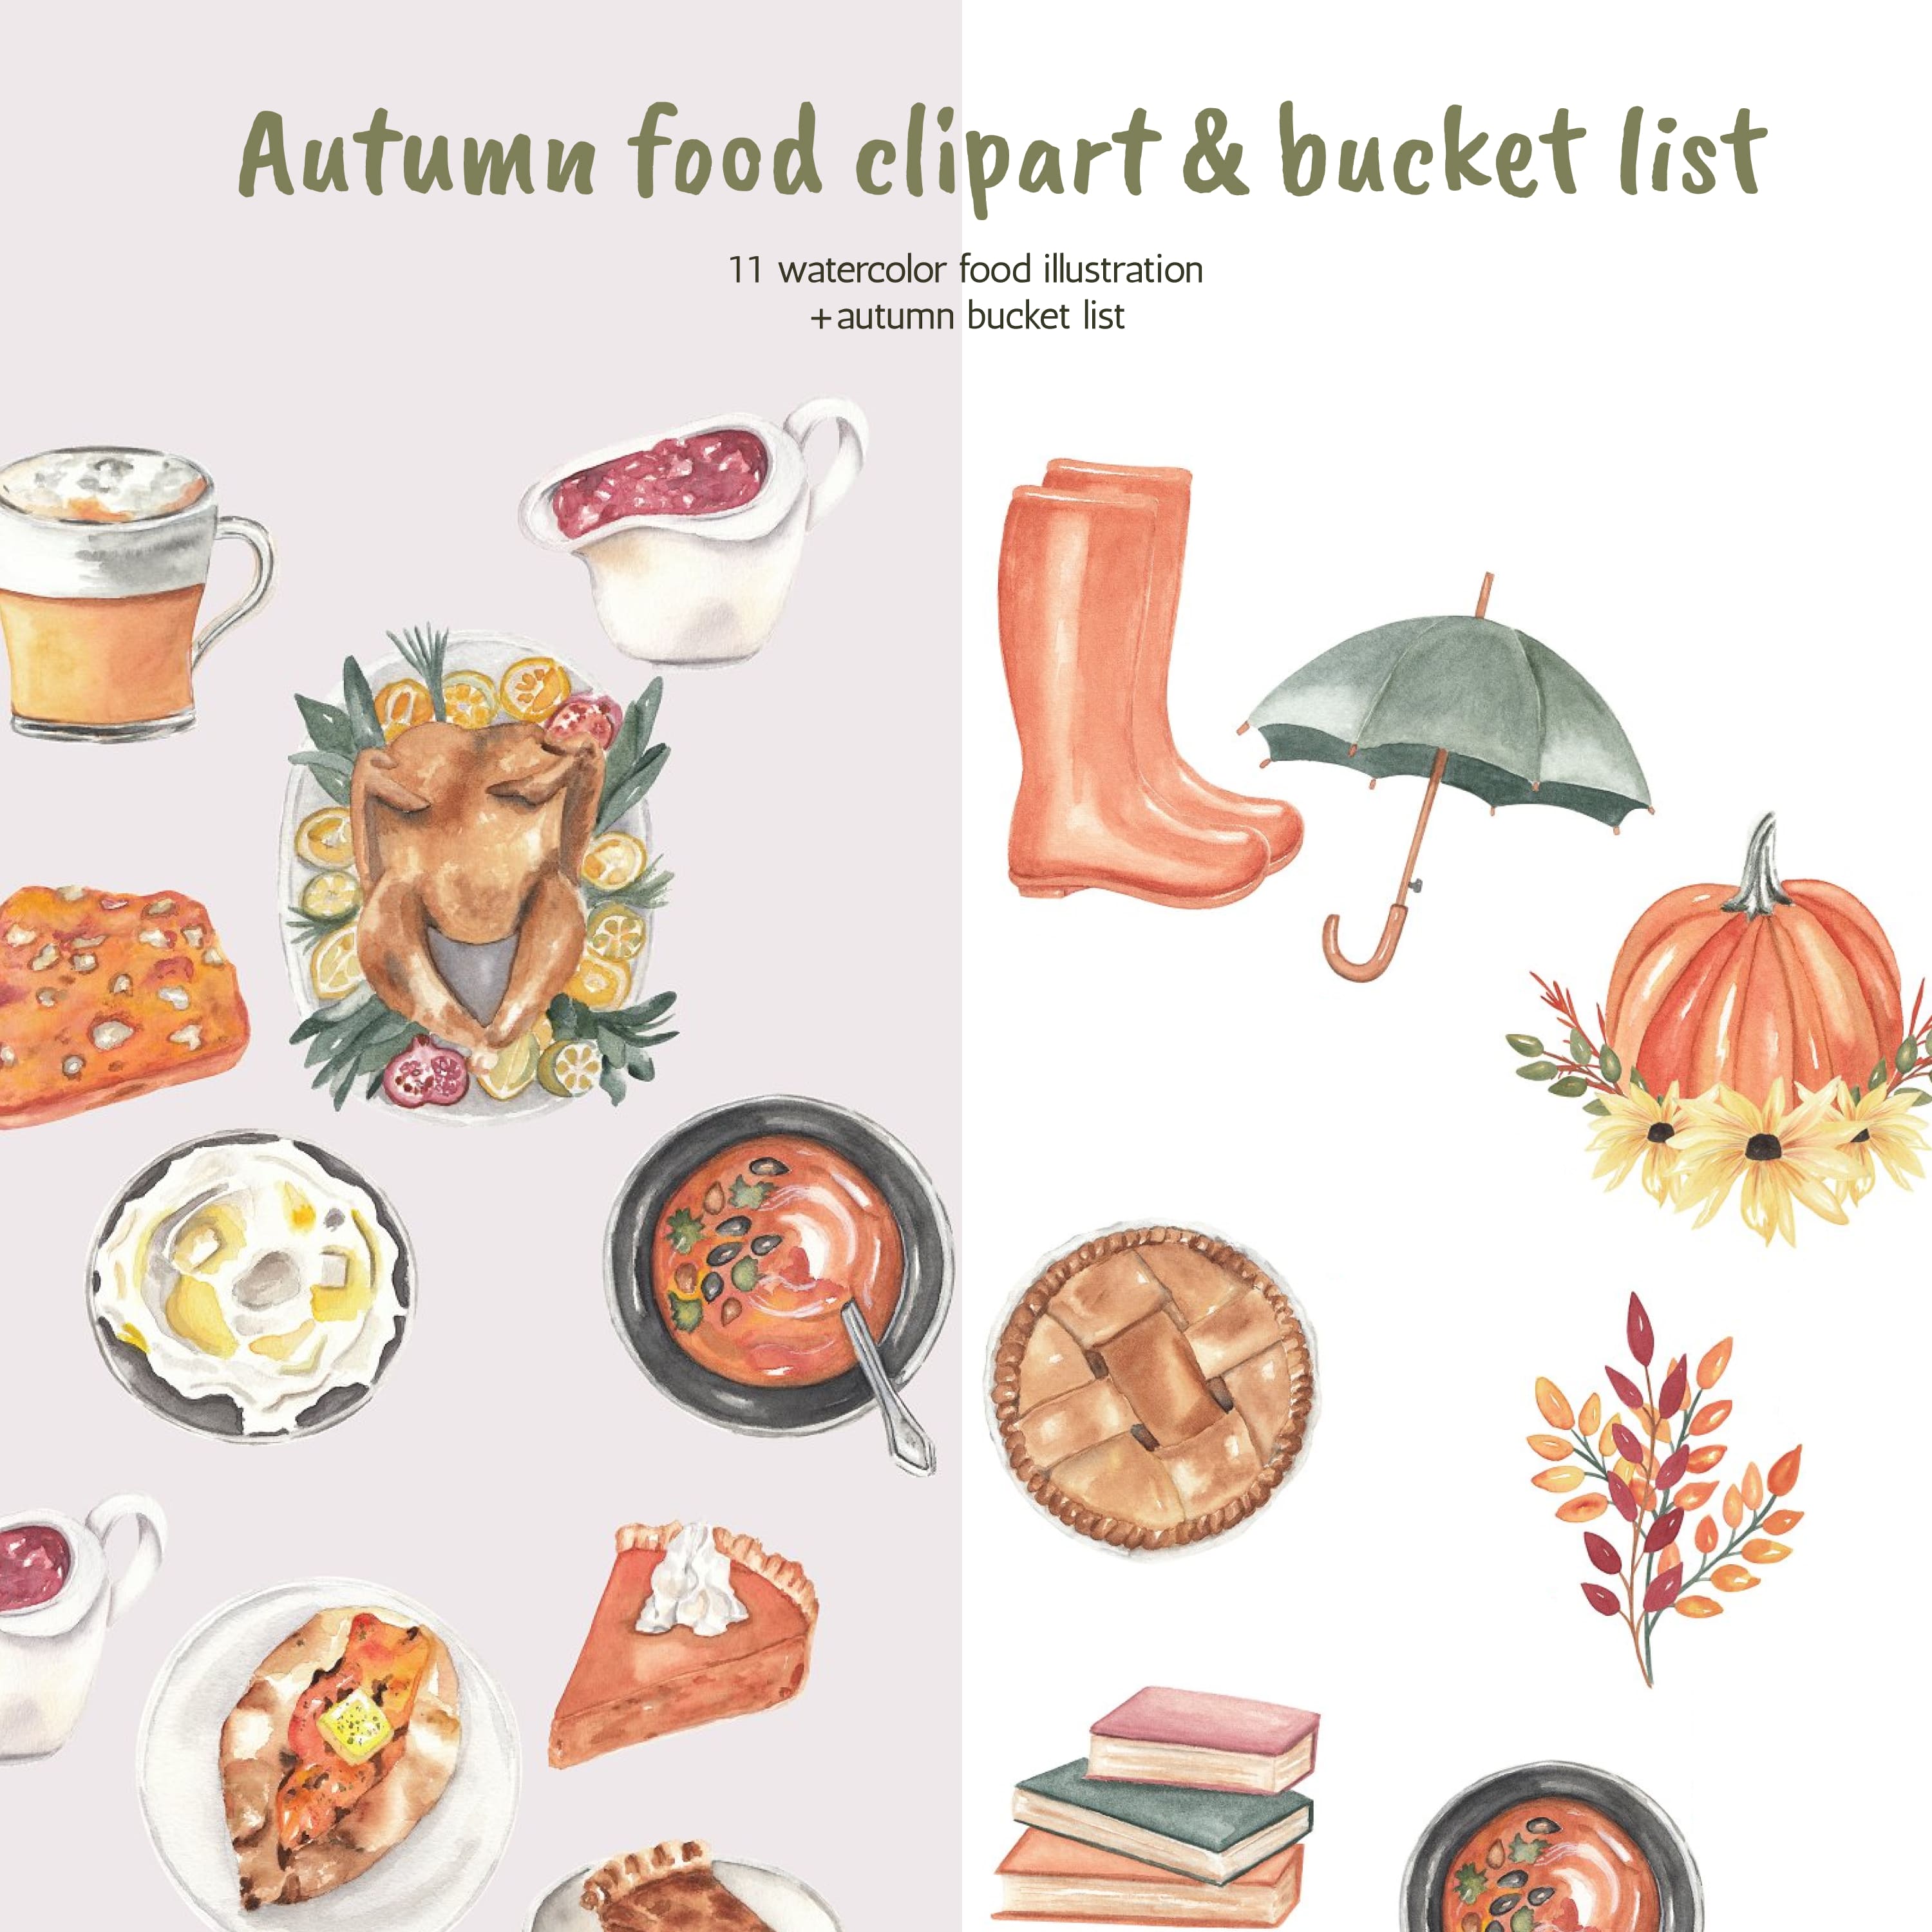 Autumn food clipart & bucket list cover.